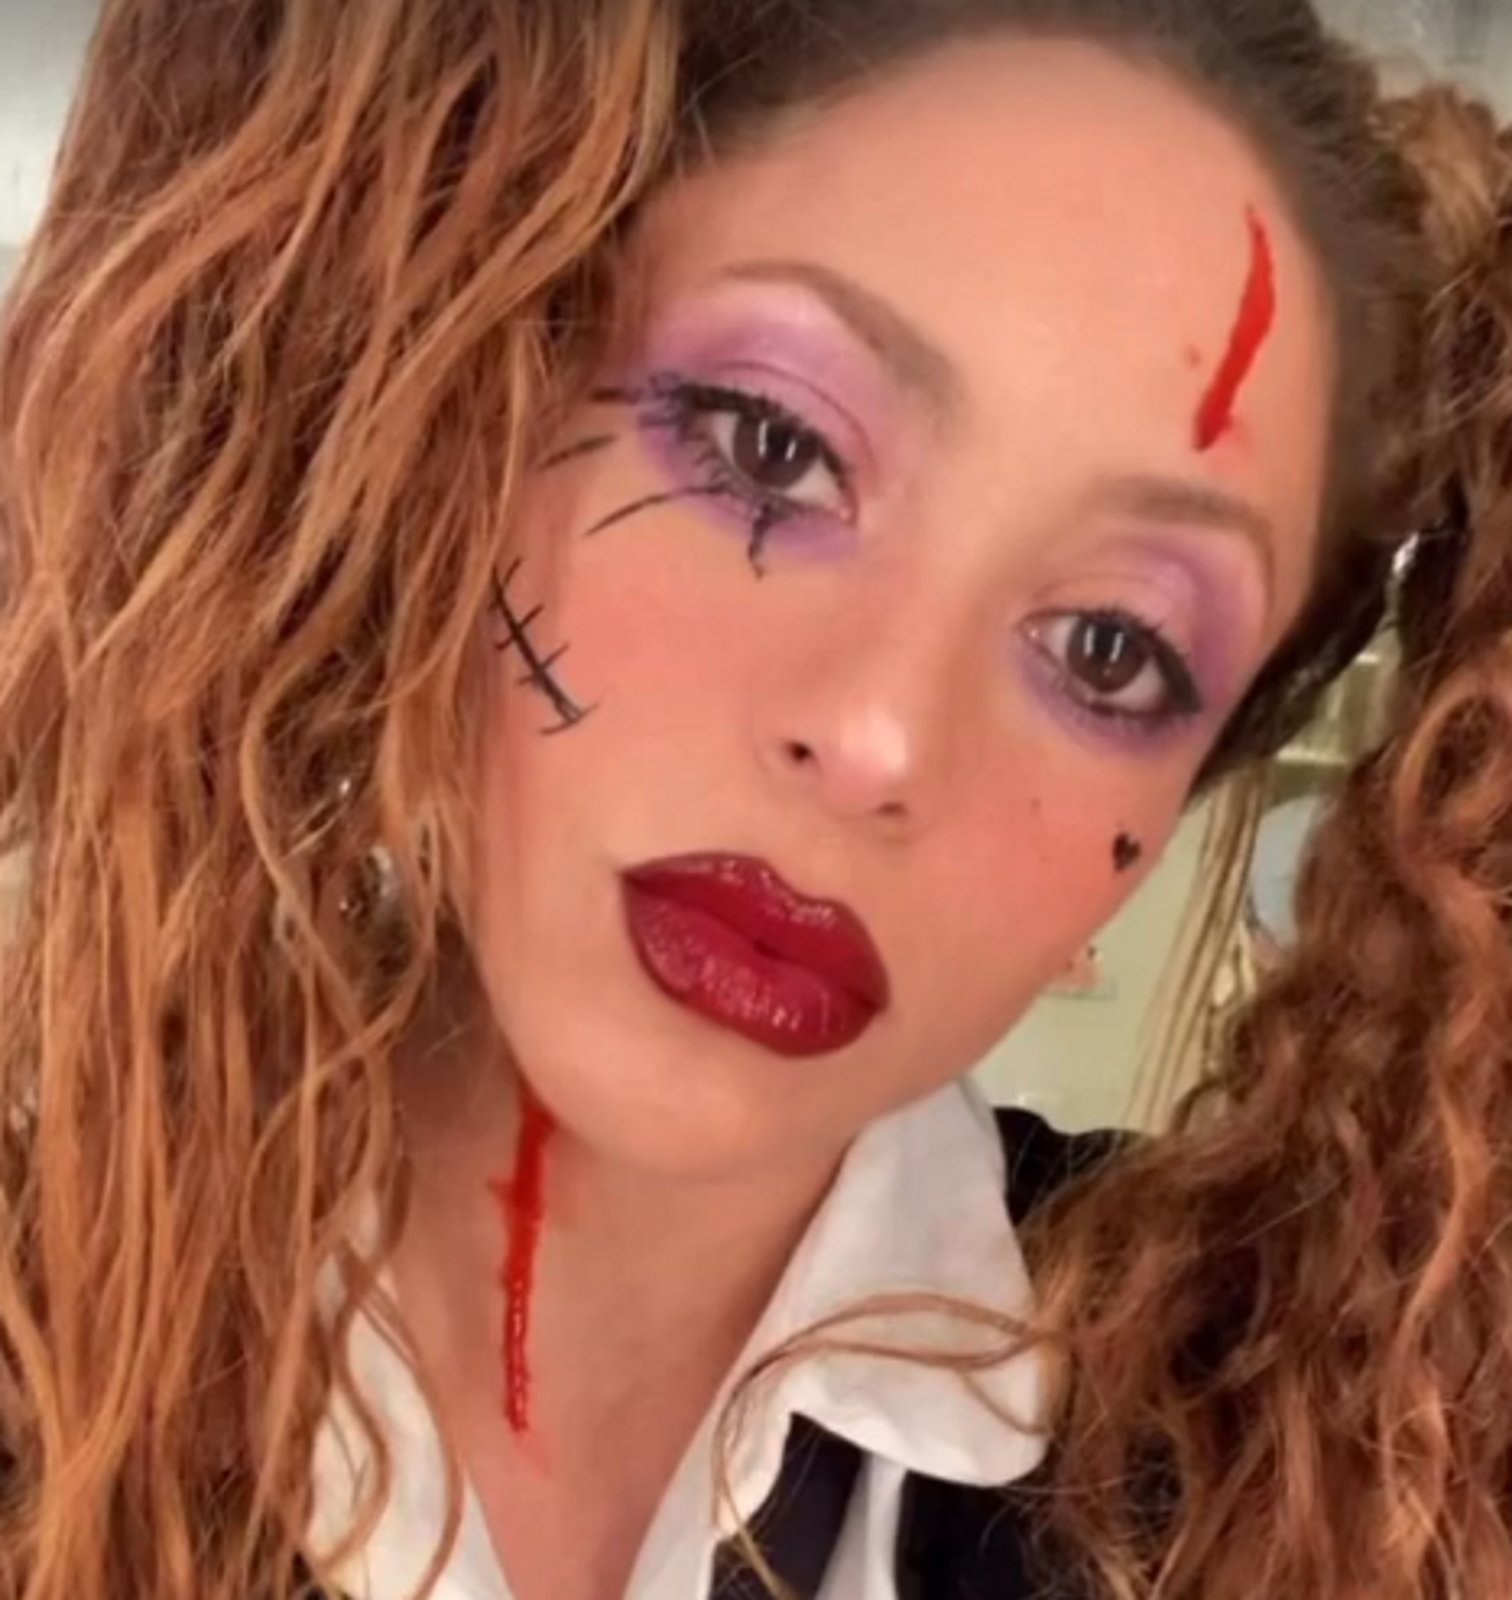 Shakira i Piqué, petó a la boca per celebrar Halloween amb aspecte terrorífic